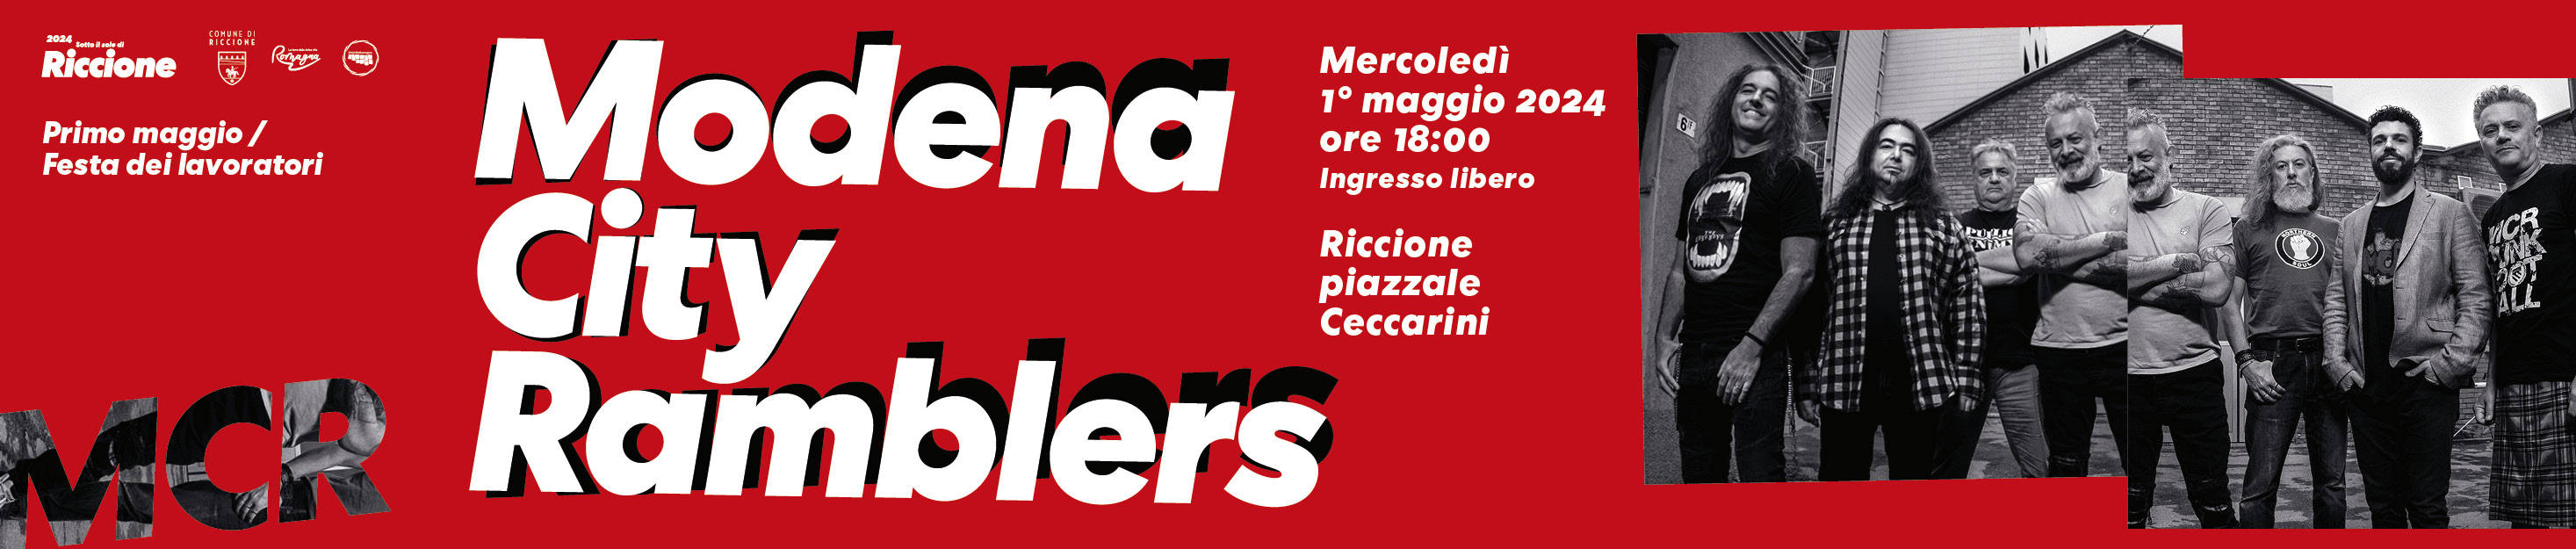 Il 1° maggio il concerto live dei Modena City Ramblers in piazzale Ceccarini